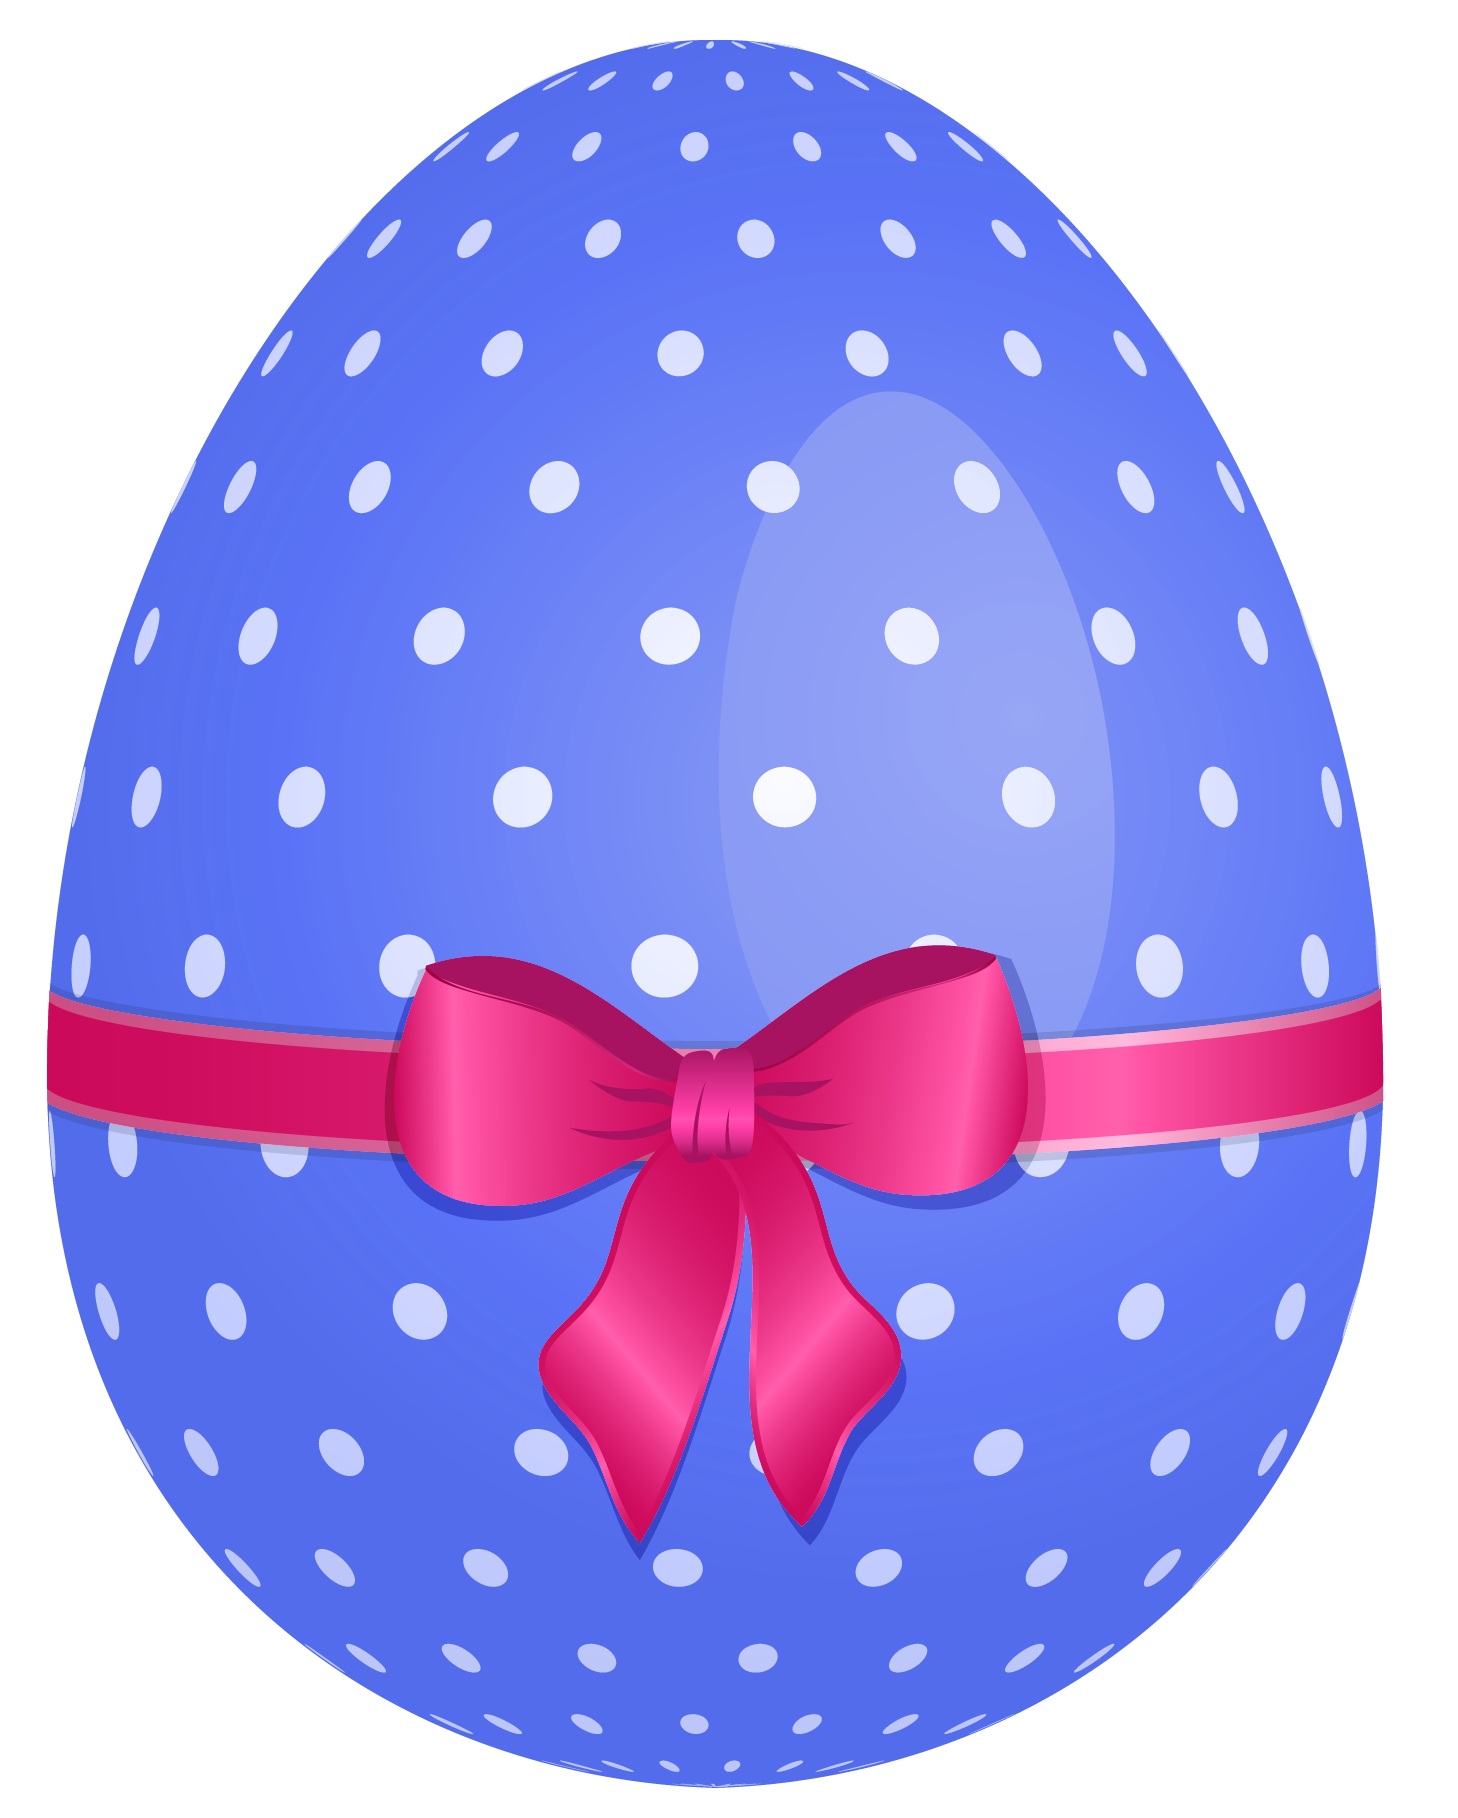 Blue Egg Easter Free HQ Image PNG Image